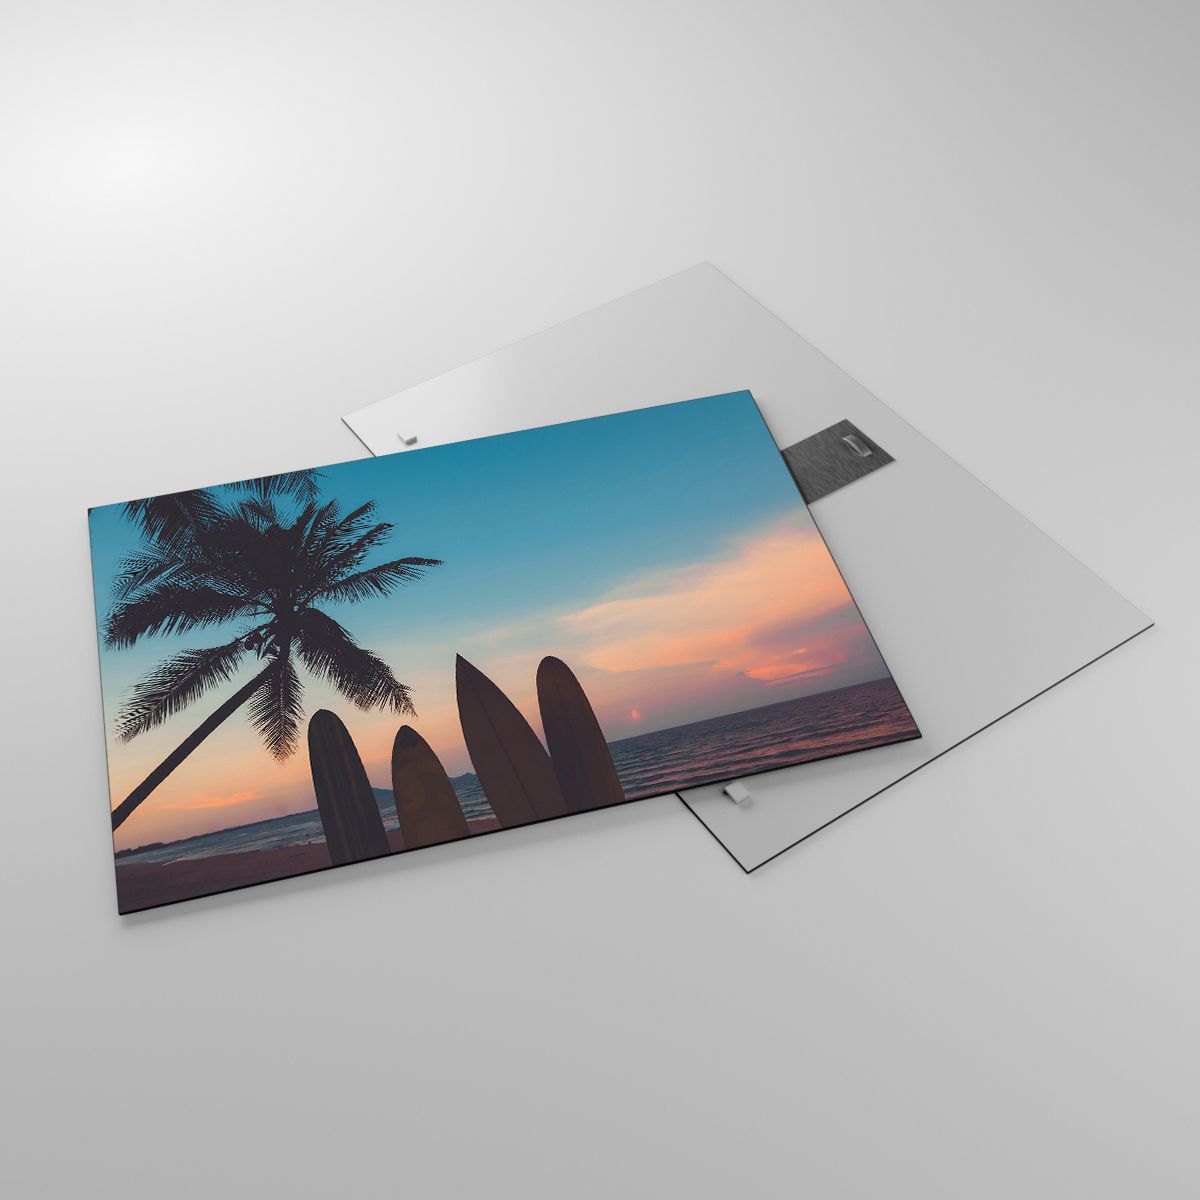 Glasbild Landschaft, Glasbild Surfen, Glasbild Meer, Glasbild Kokusnuss-Palme, Glasbild Der Sonnenuntergang